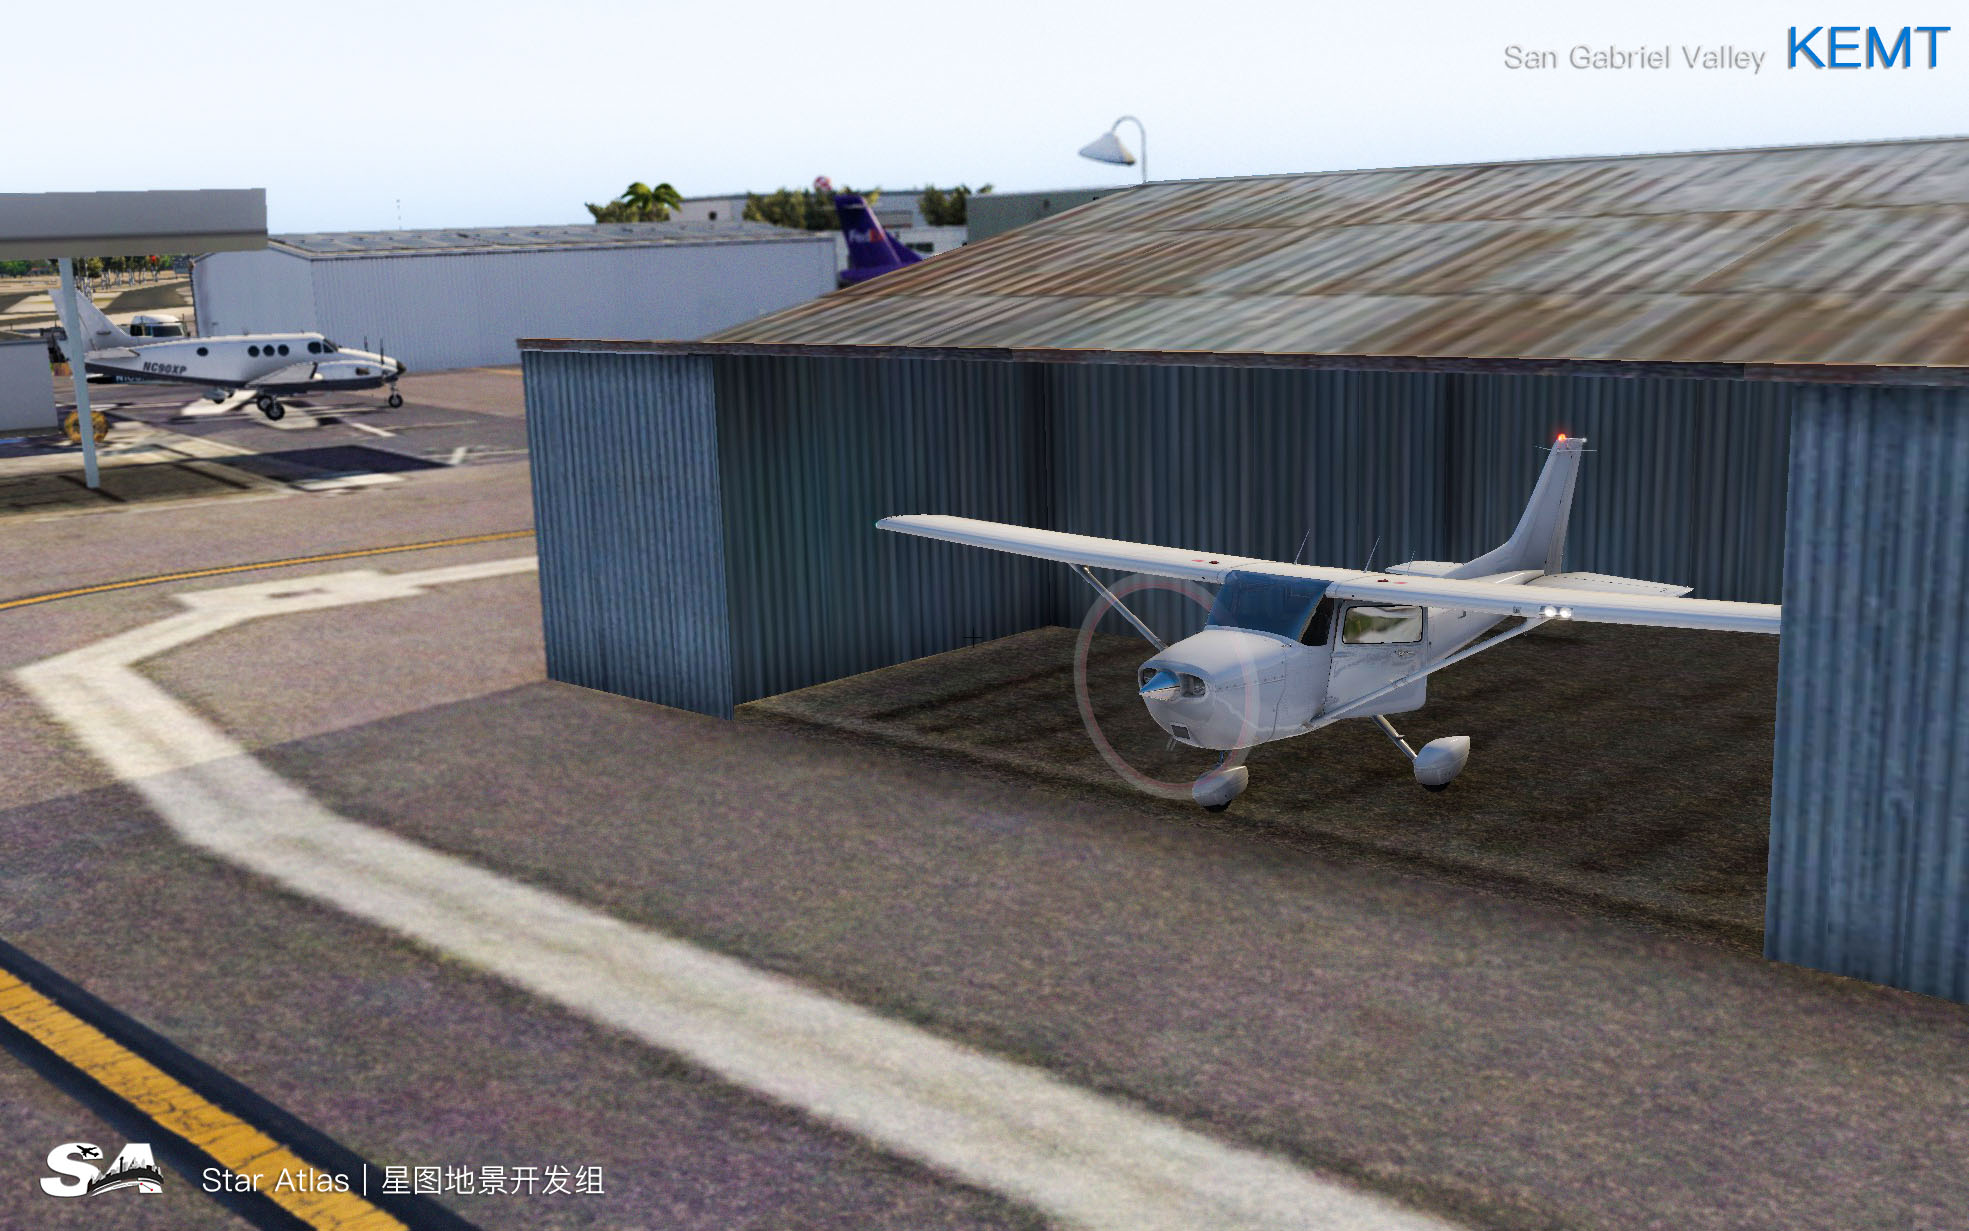 【X-Plane】KEMT-圣盖博谷机场 HD 1.0-6941 